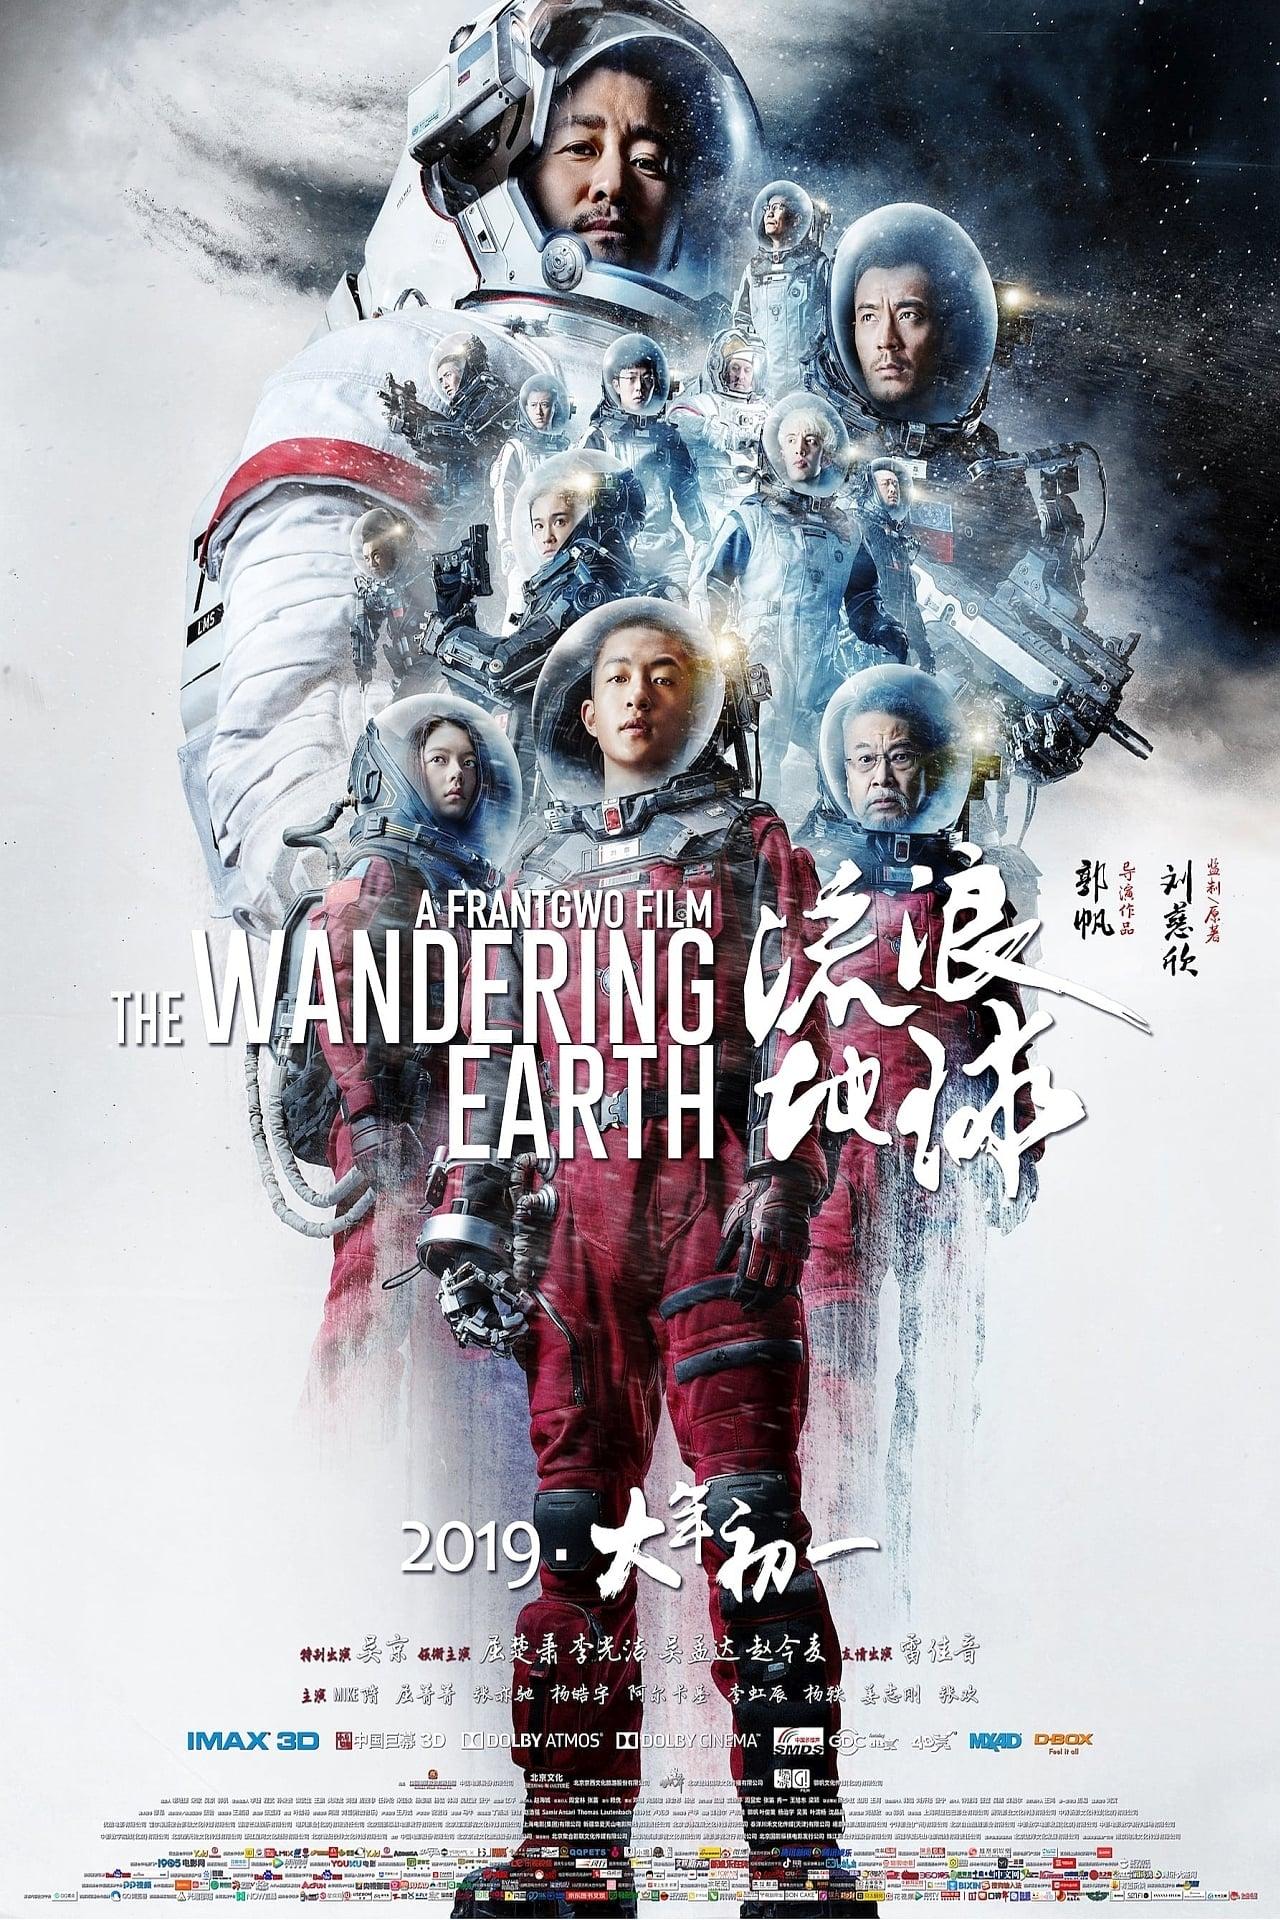 Vándorló föld (The Wandering Earth / Liu lang di qiu) 2019.